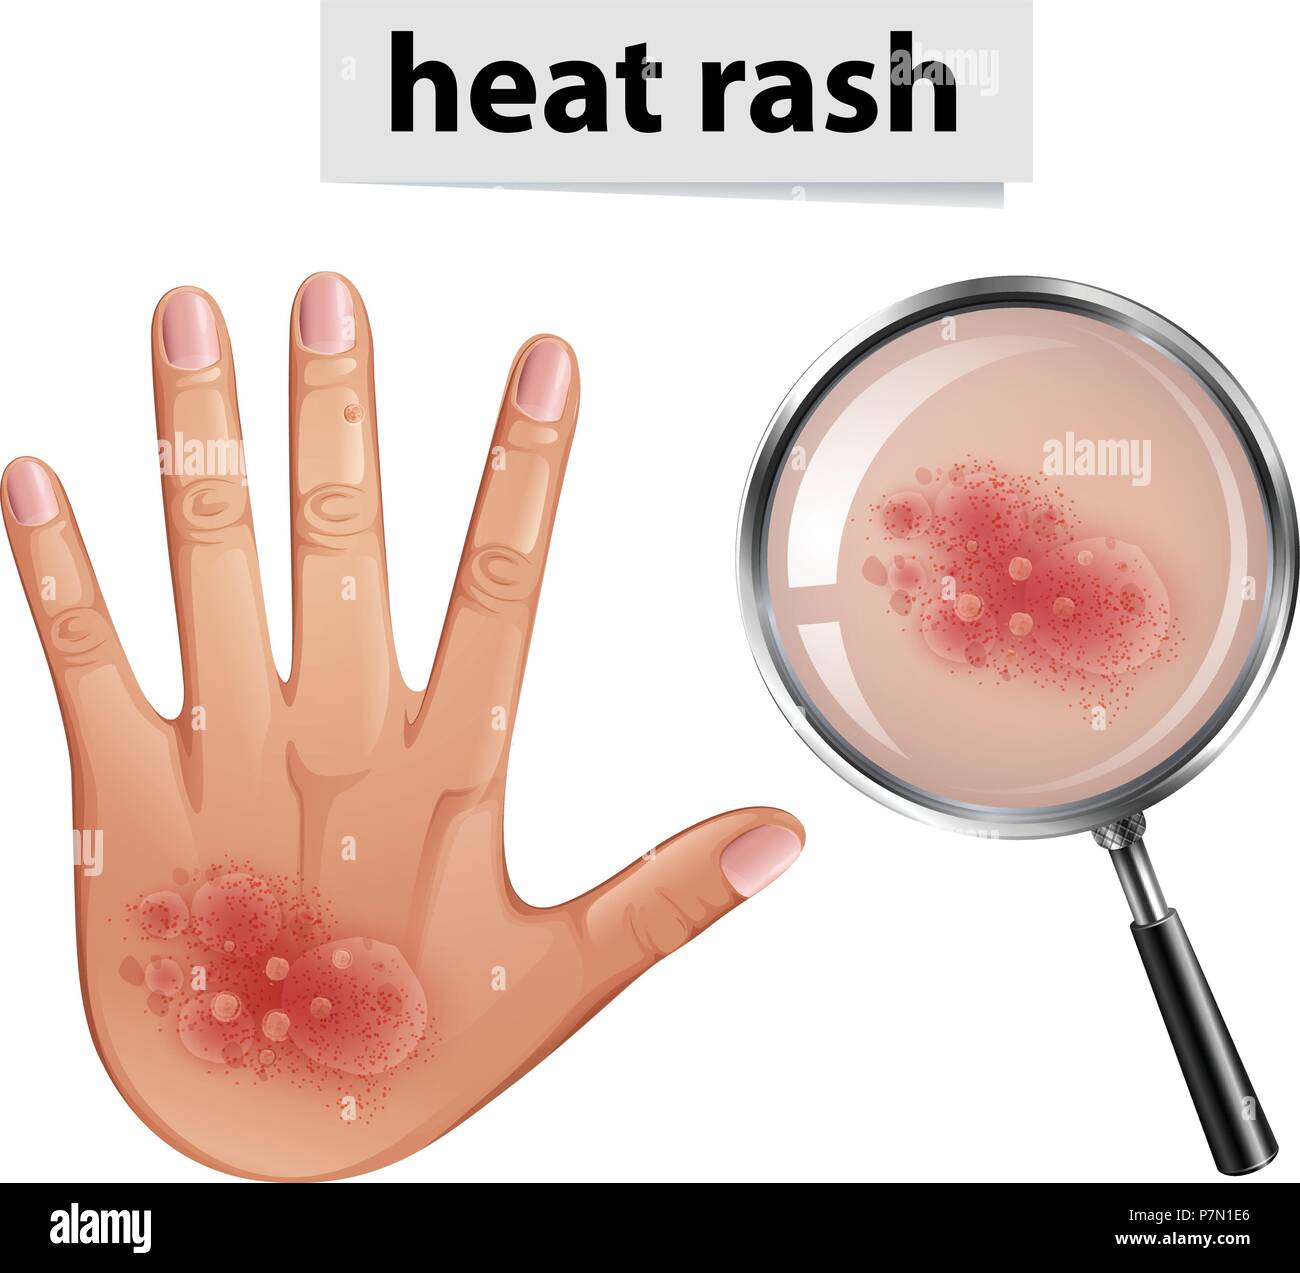 adult heat rash on neck